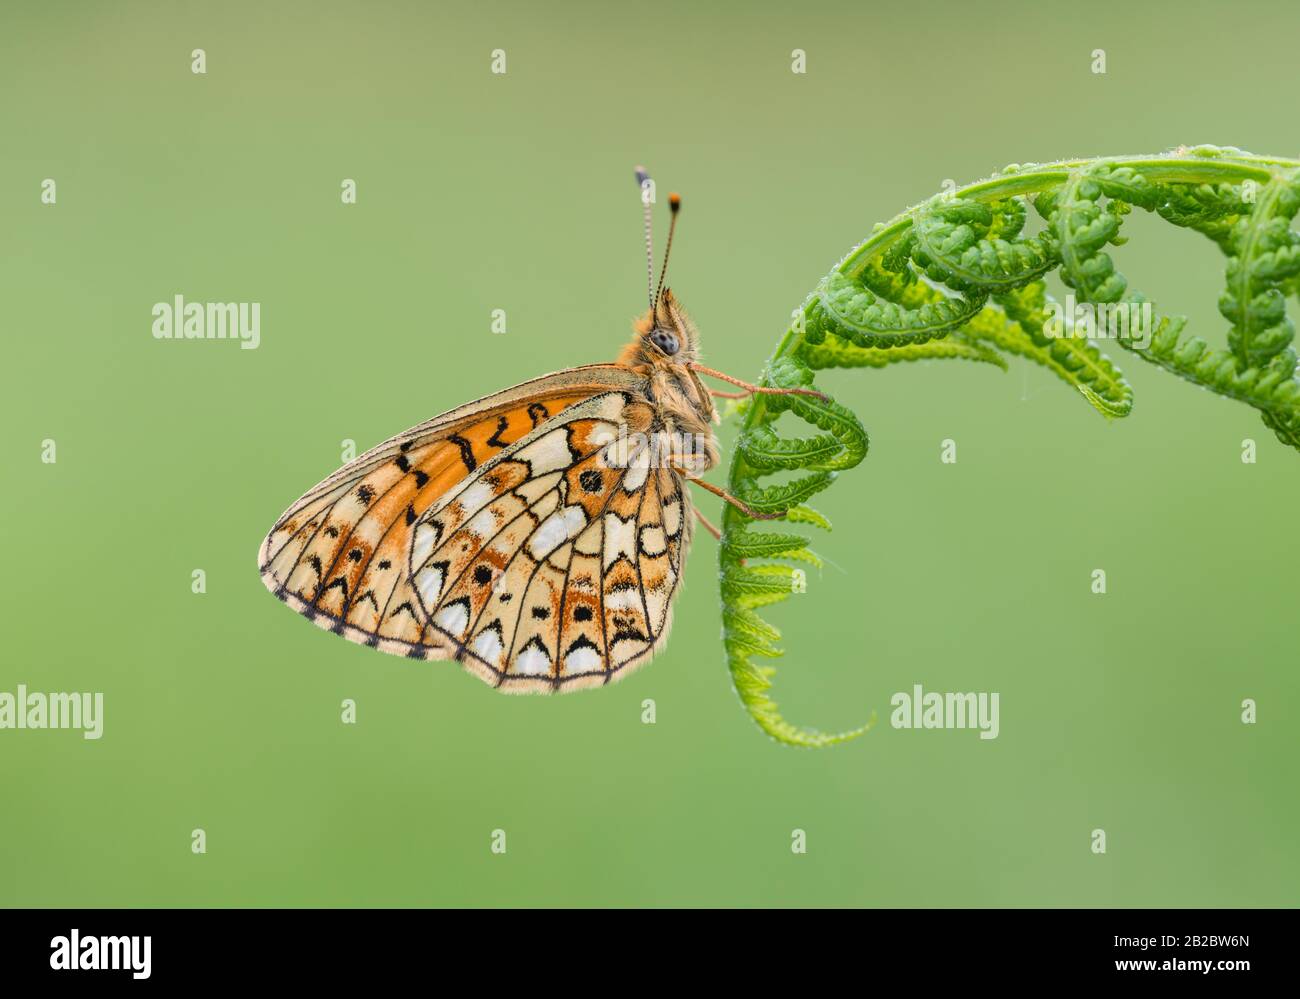 Una piccola farfalla fritillaria bordata da una perla su una pianta, con le sue ali chiuse. Preso alle miniere di Priddy in Somerset, Inghilterra. Foto Stock